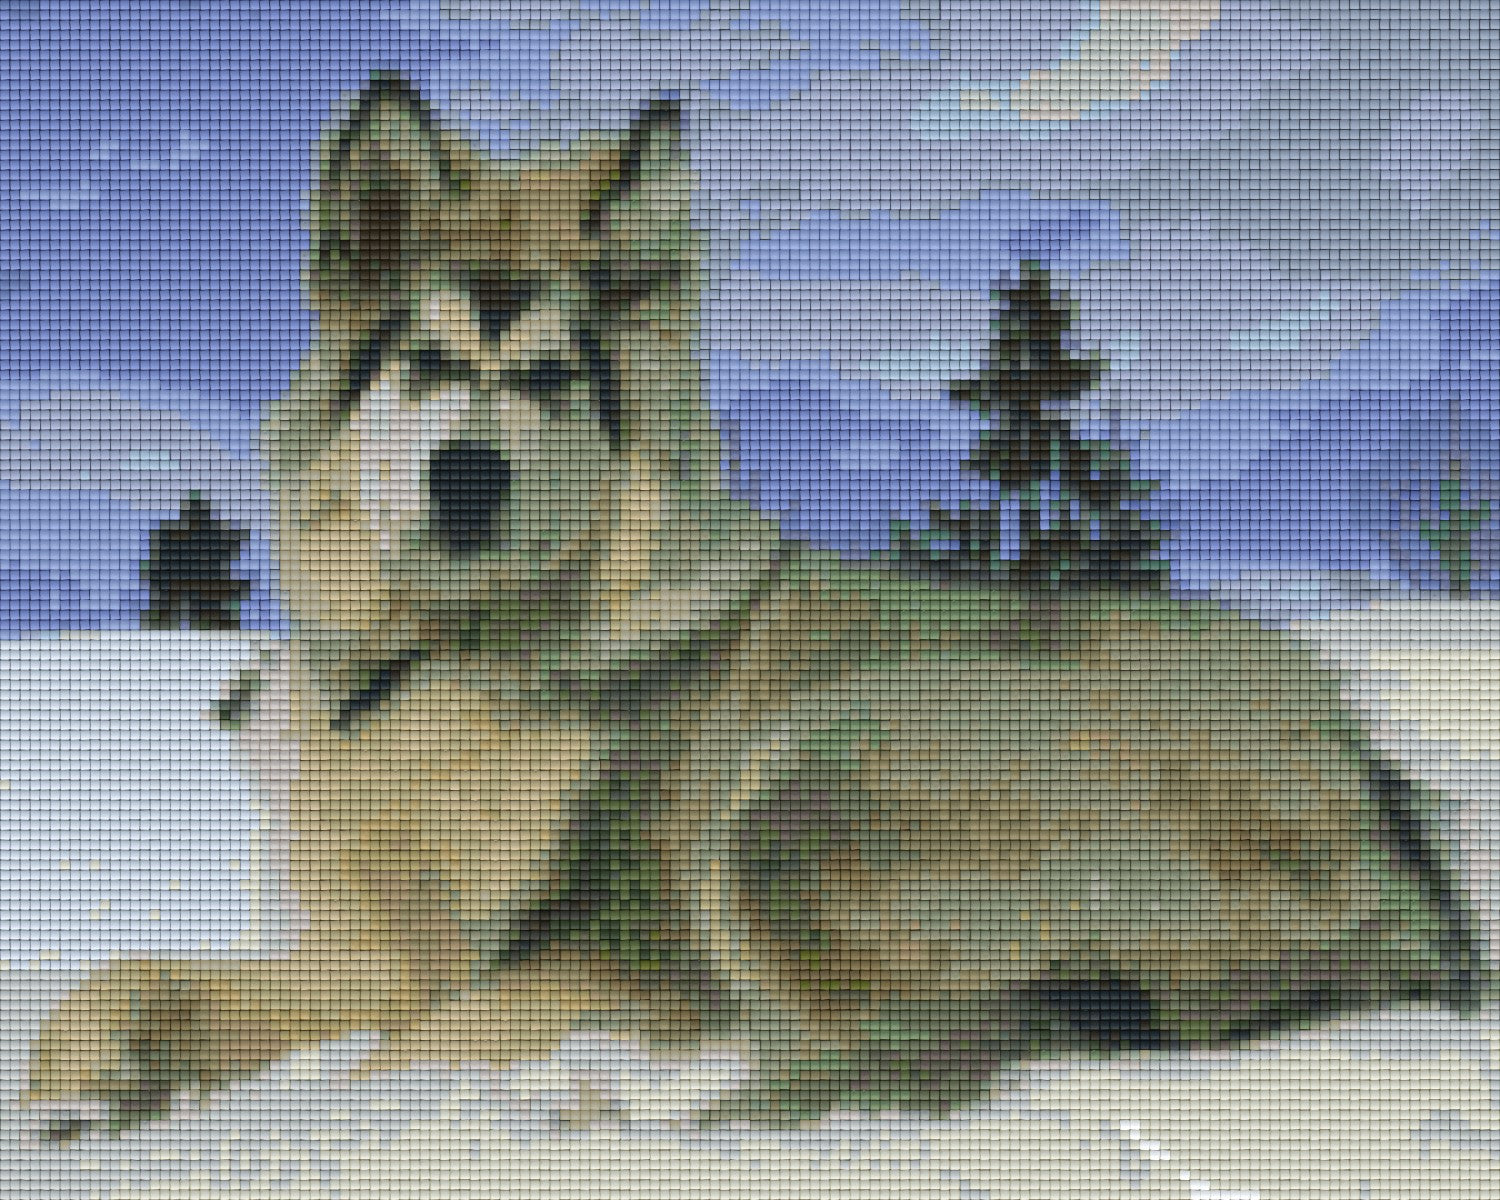 Pixelhobby Klassik Vorlage - Alaska Malamute Dog